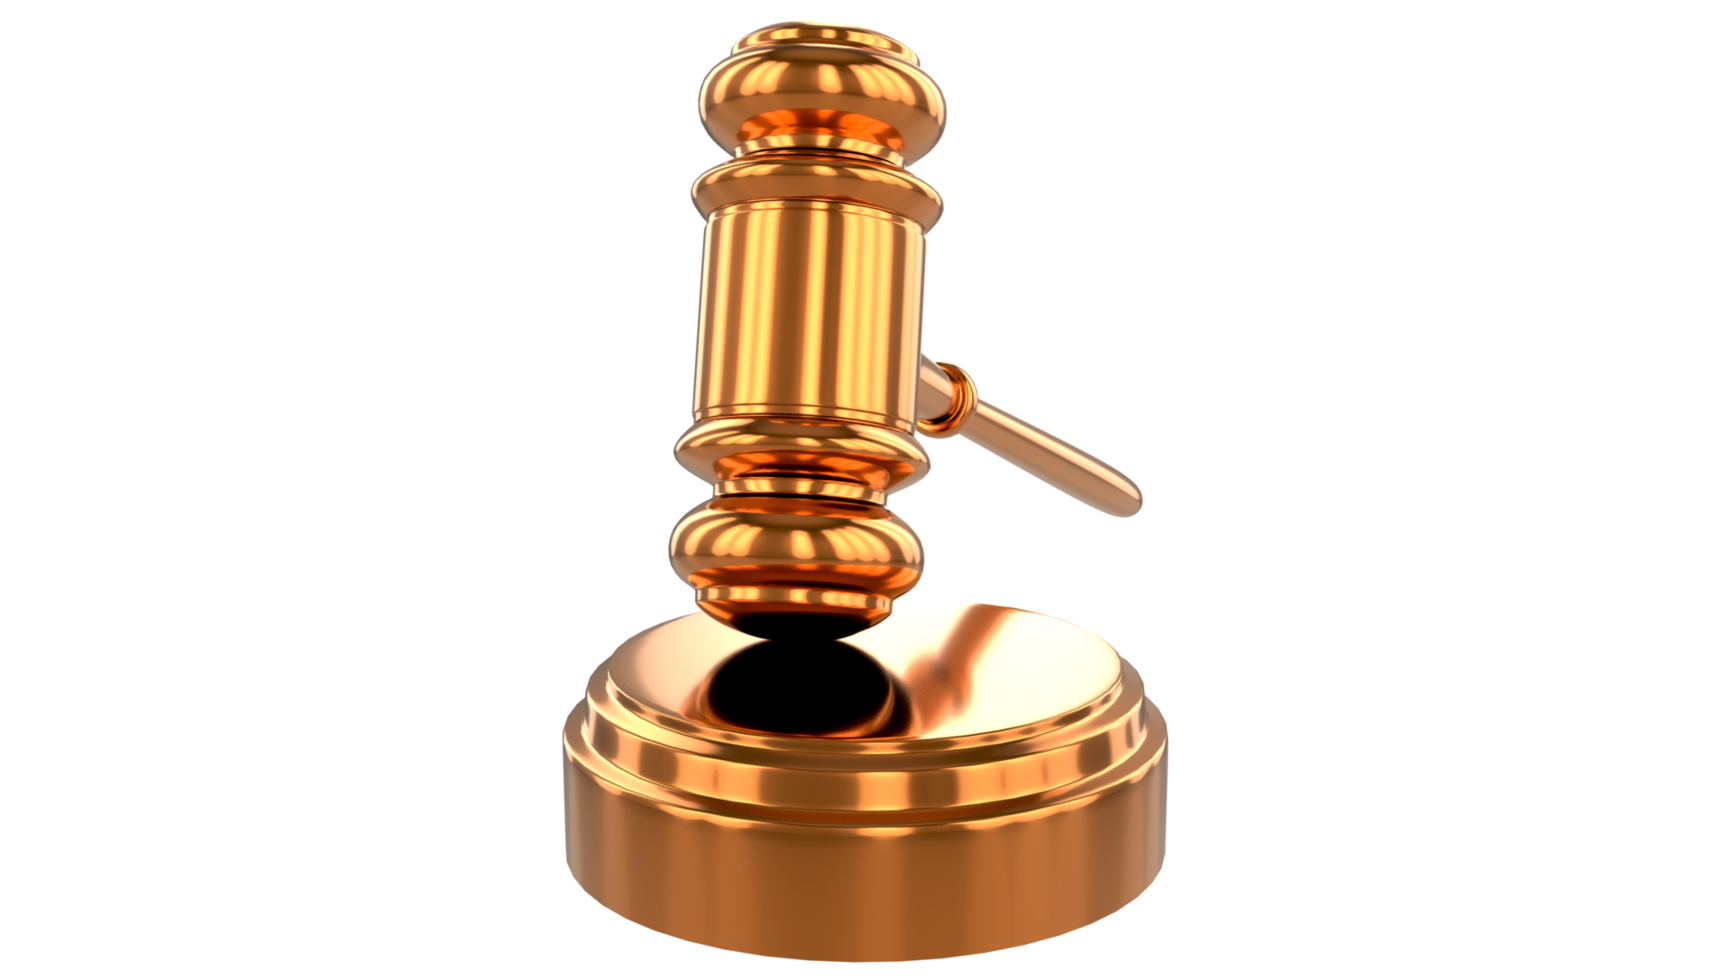 Richter Hammer Gesetz Hammer. auktionsgericht hammer gebot autoritätskonzept symbol png transparenter hintergrund